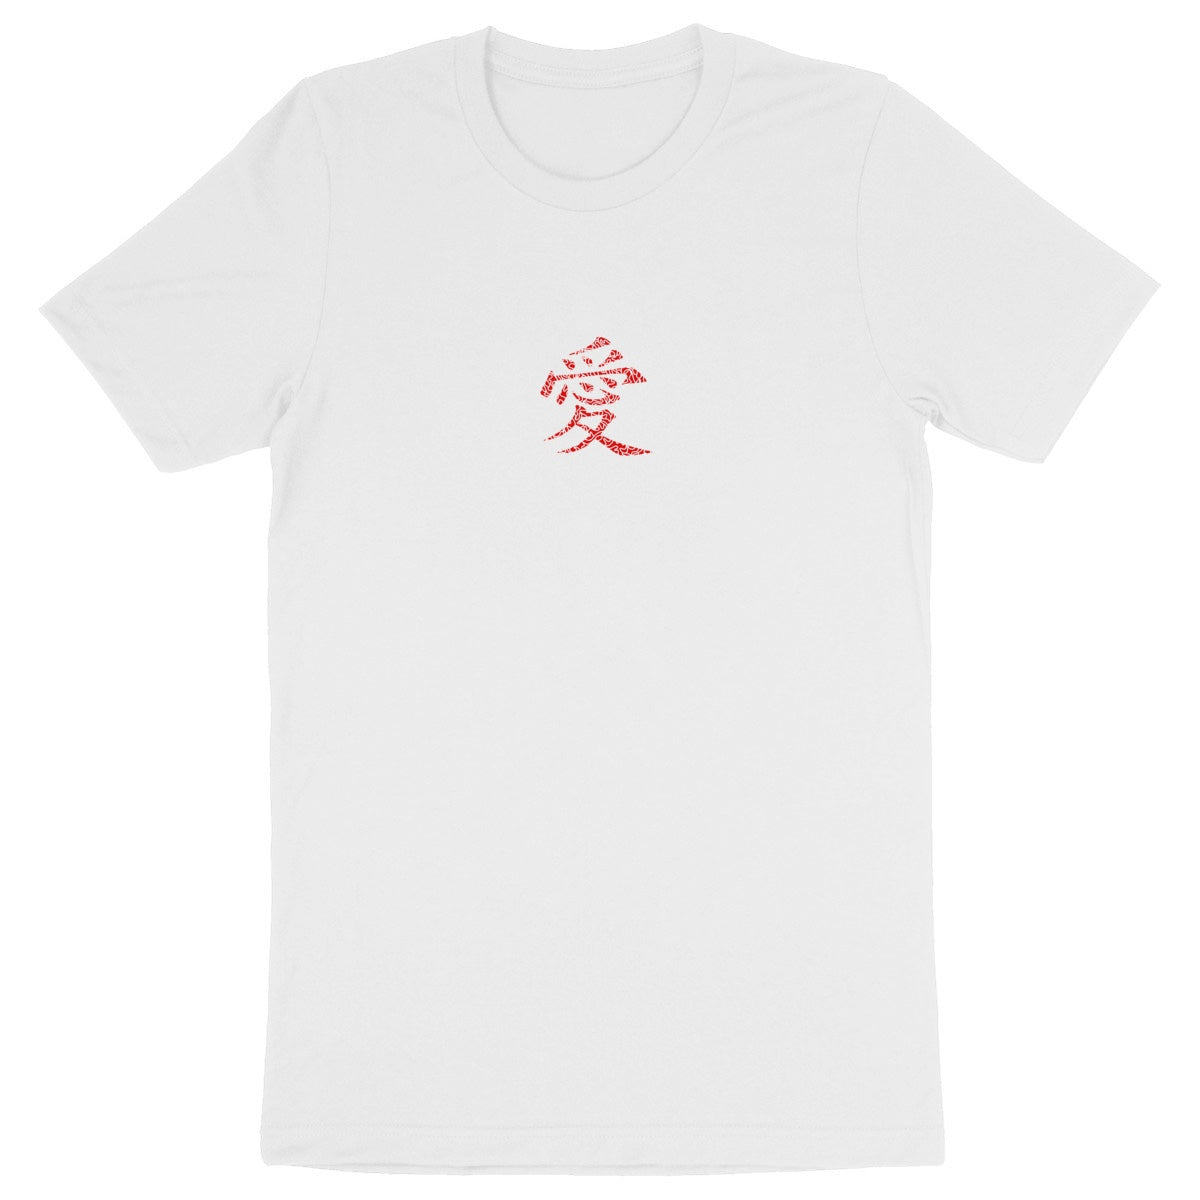 T-shirt '"Amour d'ailleurs"